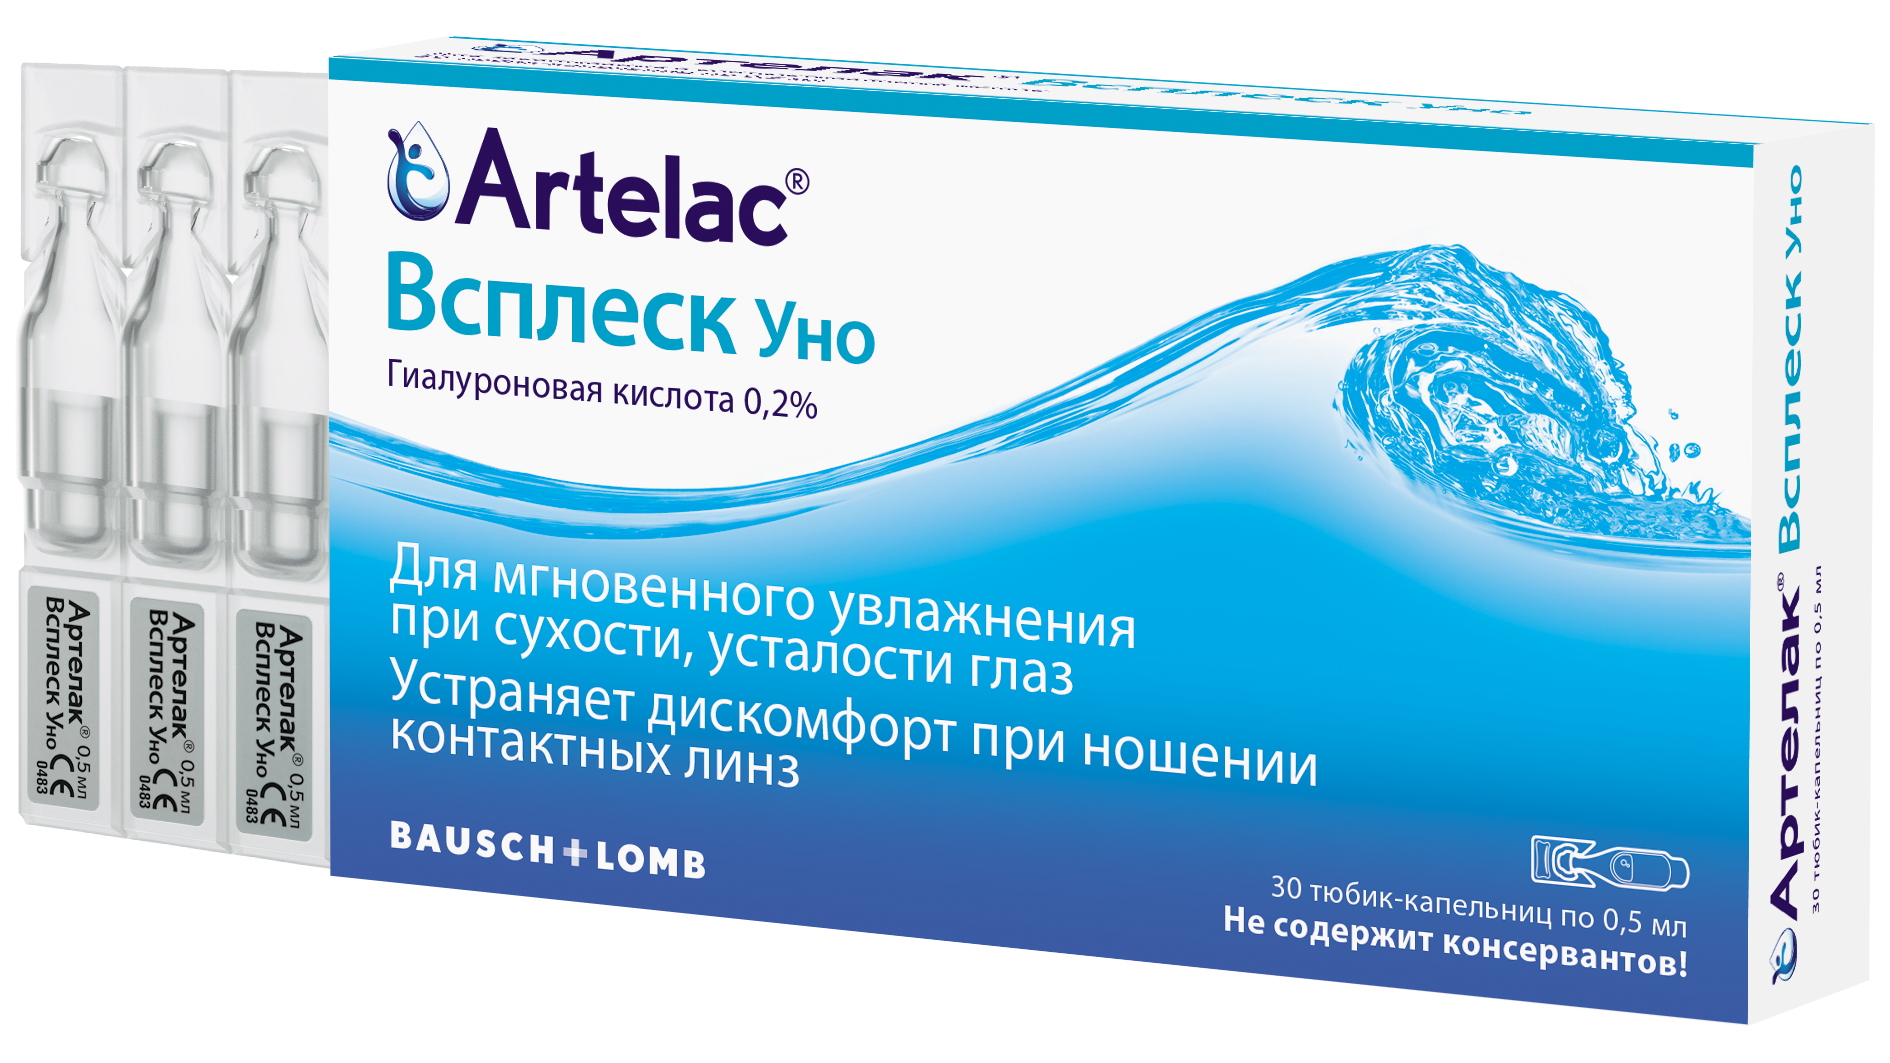 Артелак баланс уно: инструкция, отзывы, аналоги, цена в аптеках - медицинский портал medcentre24.ru